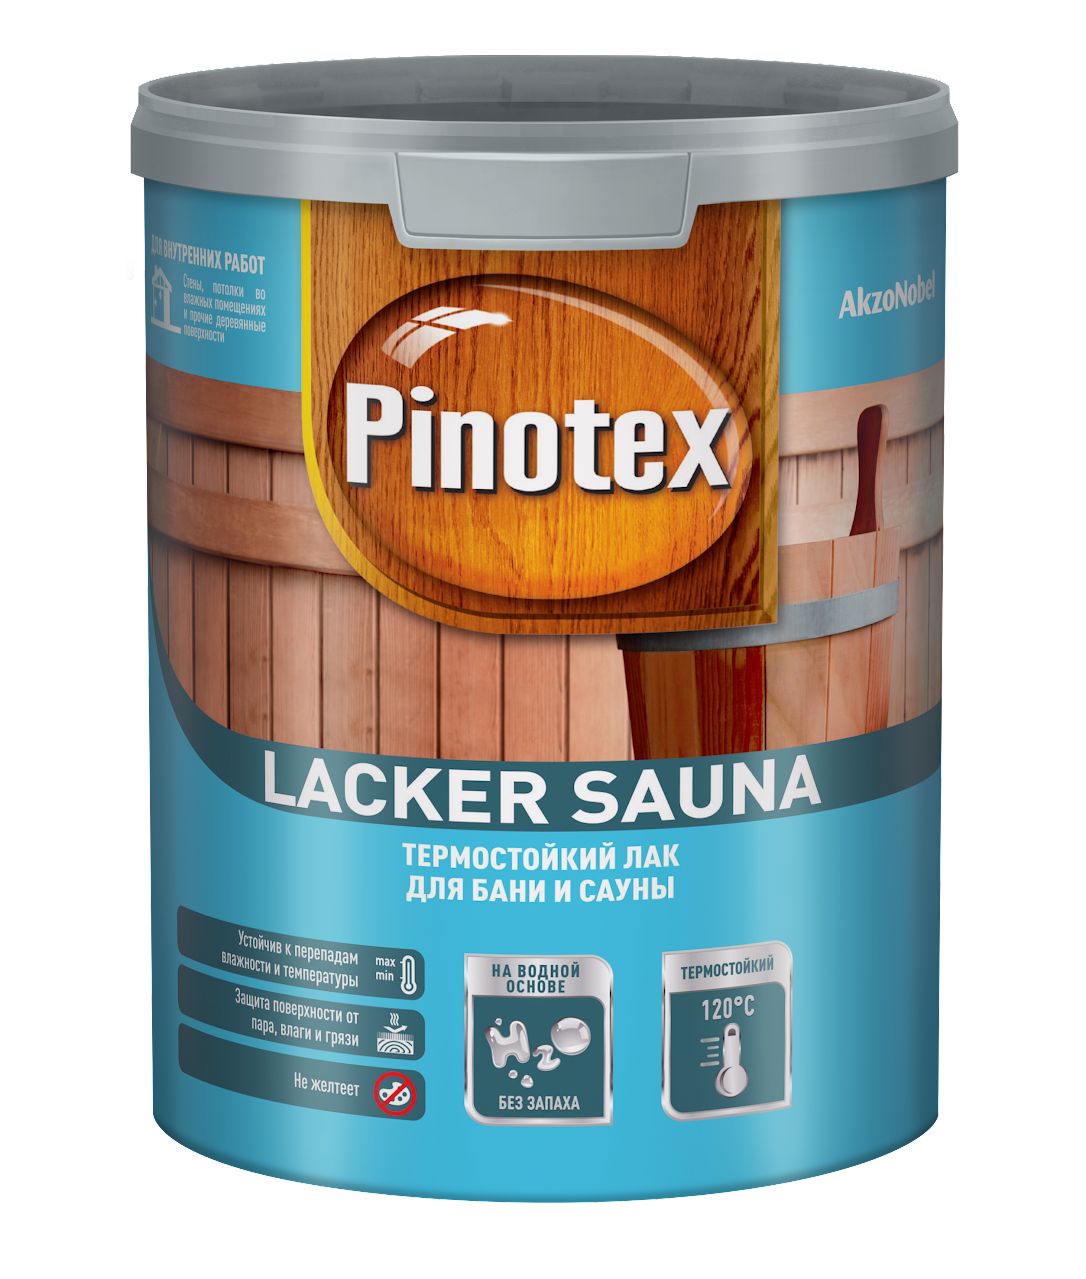 Лак Pinotex Lacker Sauna 20 на водной основе, полуматовый, 1 л фольга на бумажной основе крафт бумаге для бани и сауны r sauna 30 м2 1891